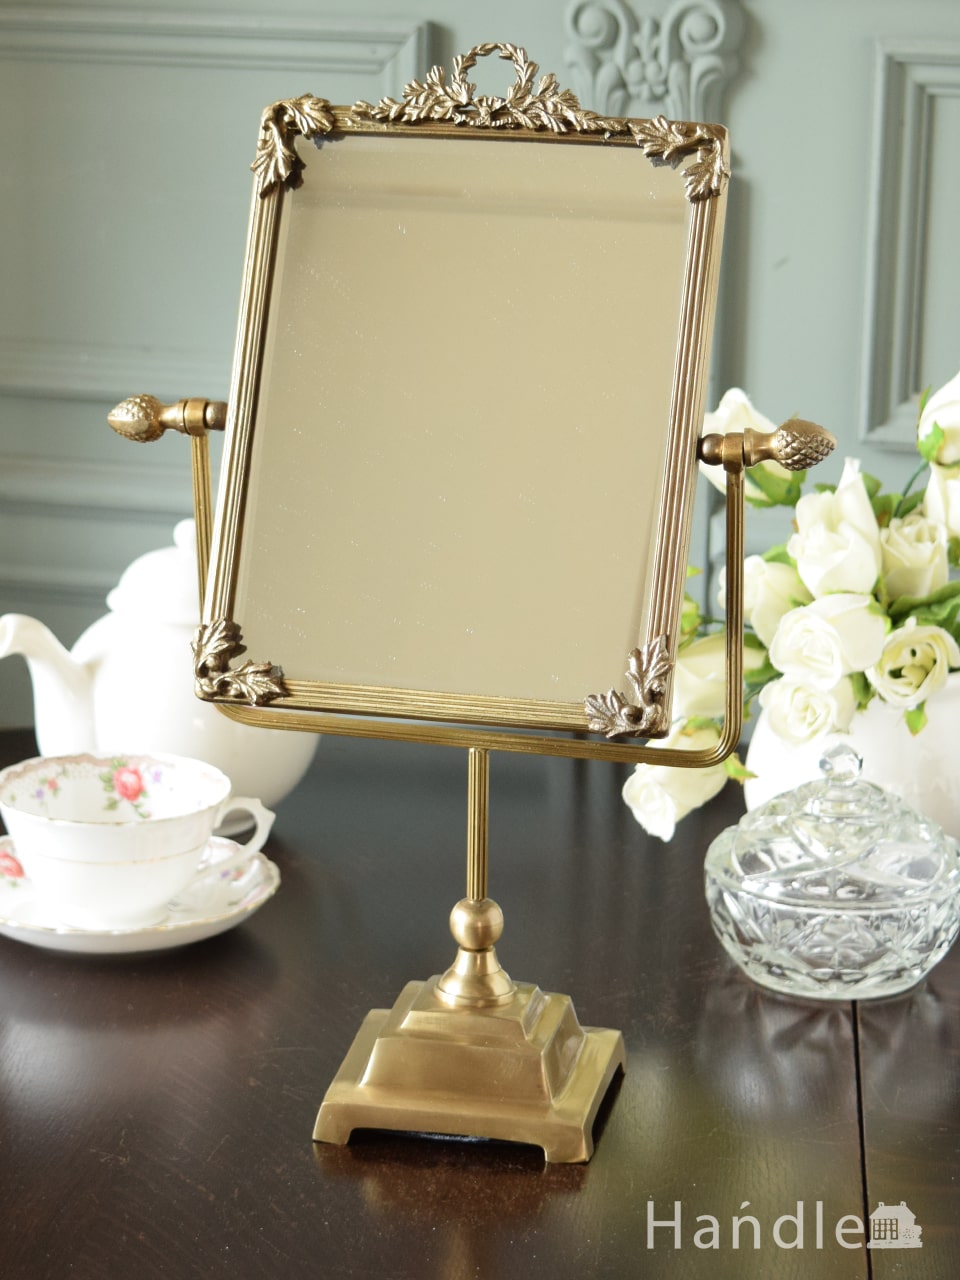 アンティーク調のおしゃれな鏡、華やかな装飾が素敵な真鍮製のスタンド